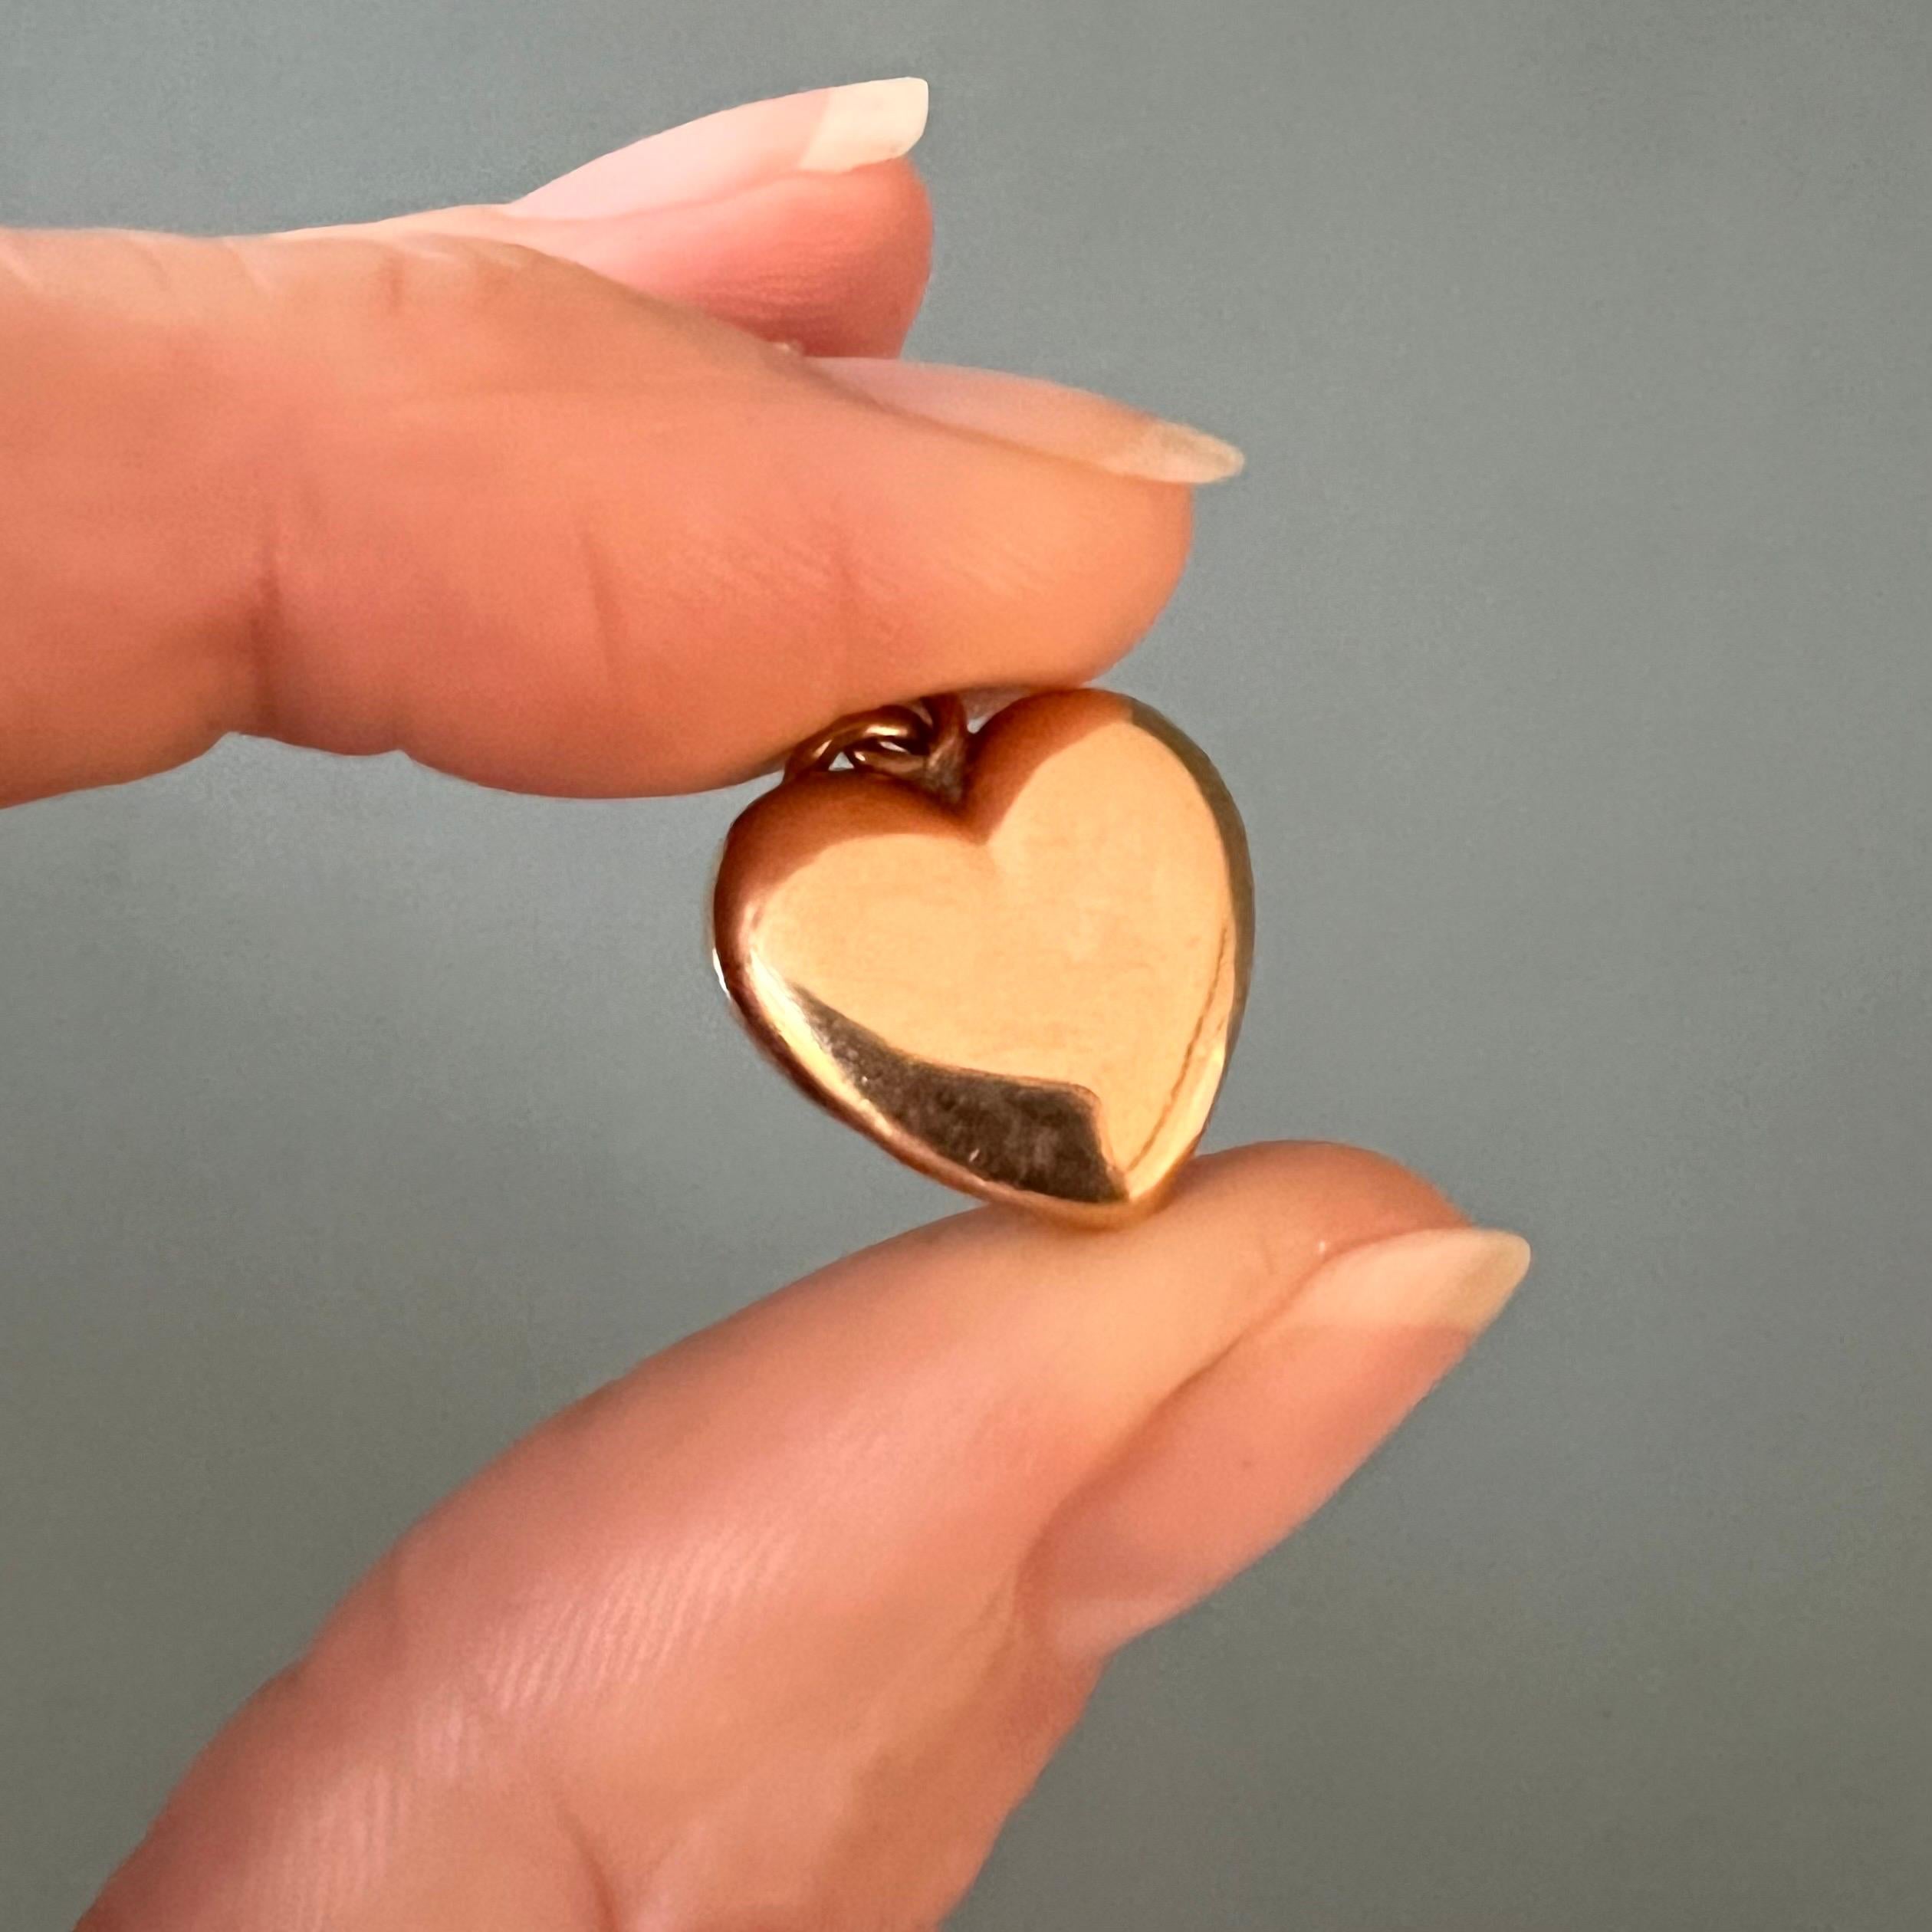 Ein Herzanhänger aus Gelbgold im Vintage-Stil. Dieses schöne Herz ist aus 18 Karat Gold gefertigt und auf beiden Seiten glatt poliert. 

Charms sind tragbare Erinnerungen, sie haben einen symbolischen und oft auch einen sentimentalen Wert. Dieser